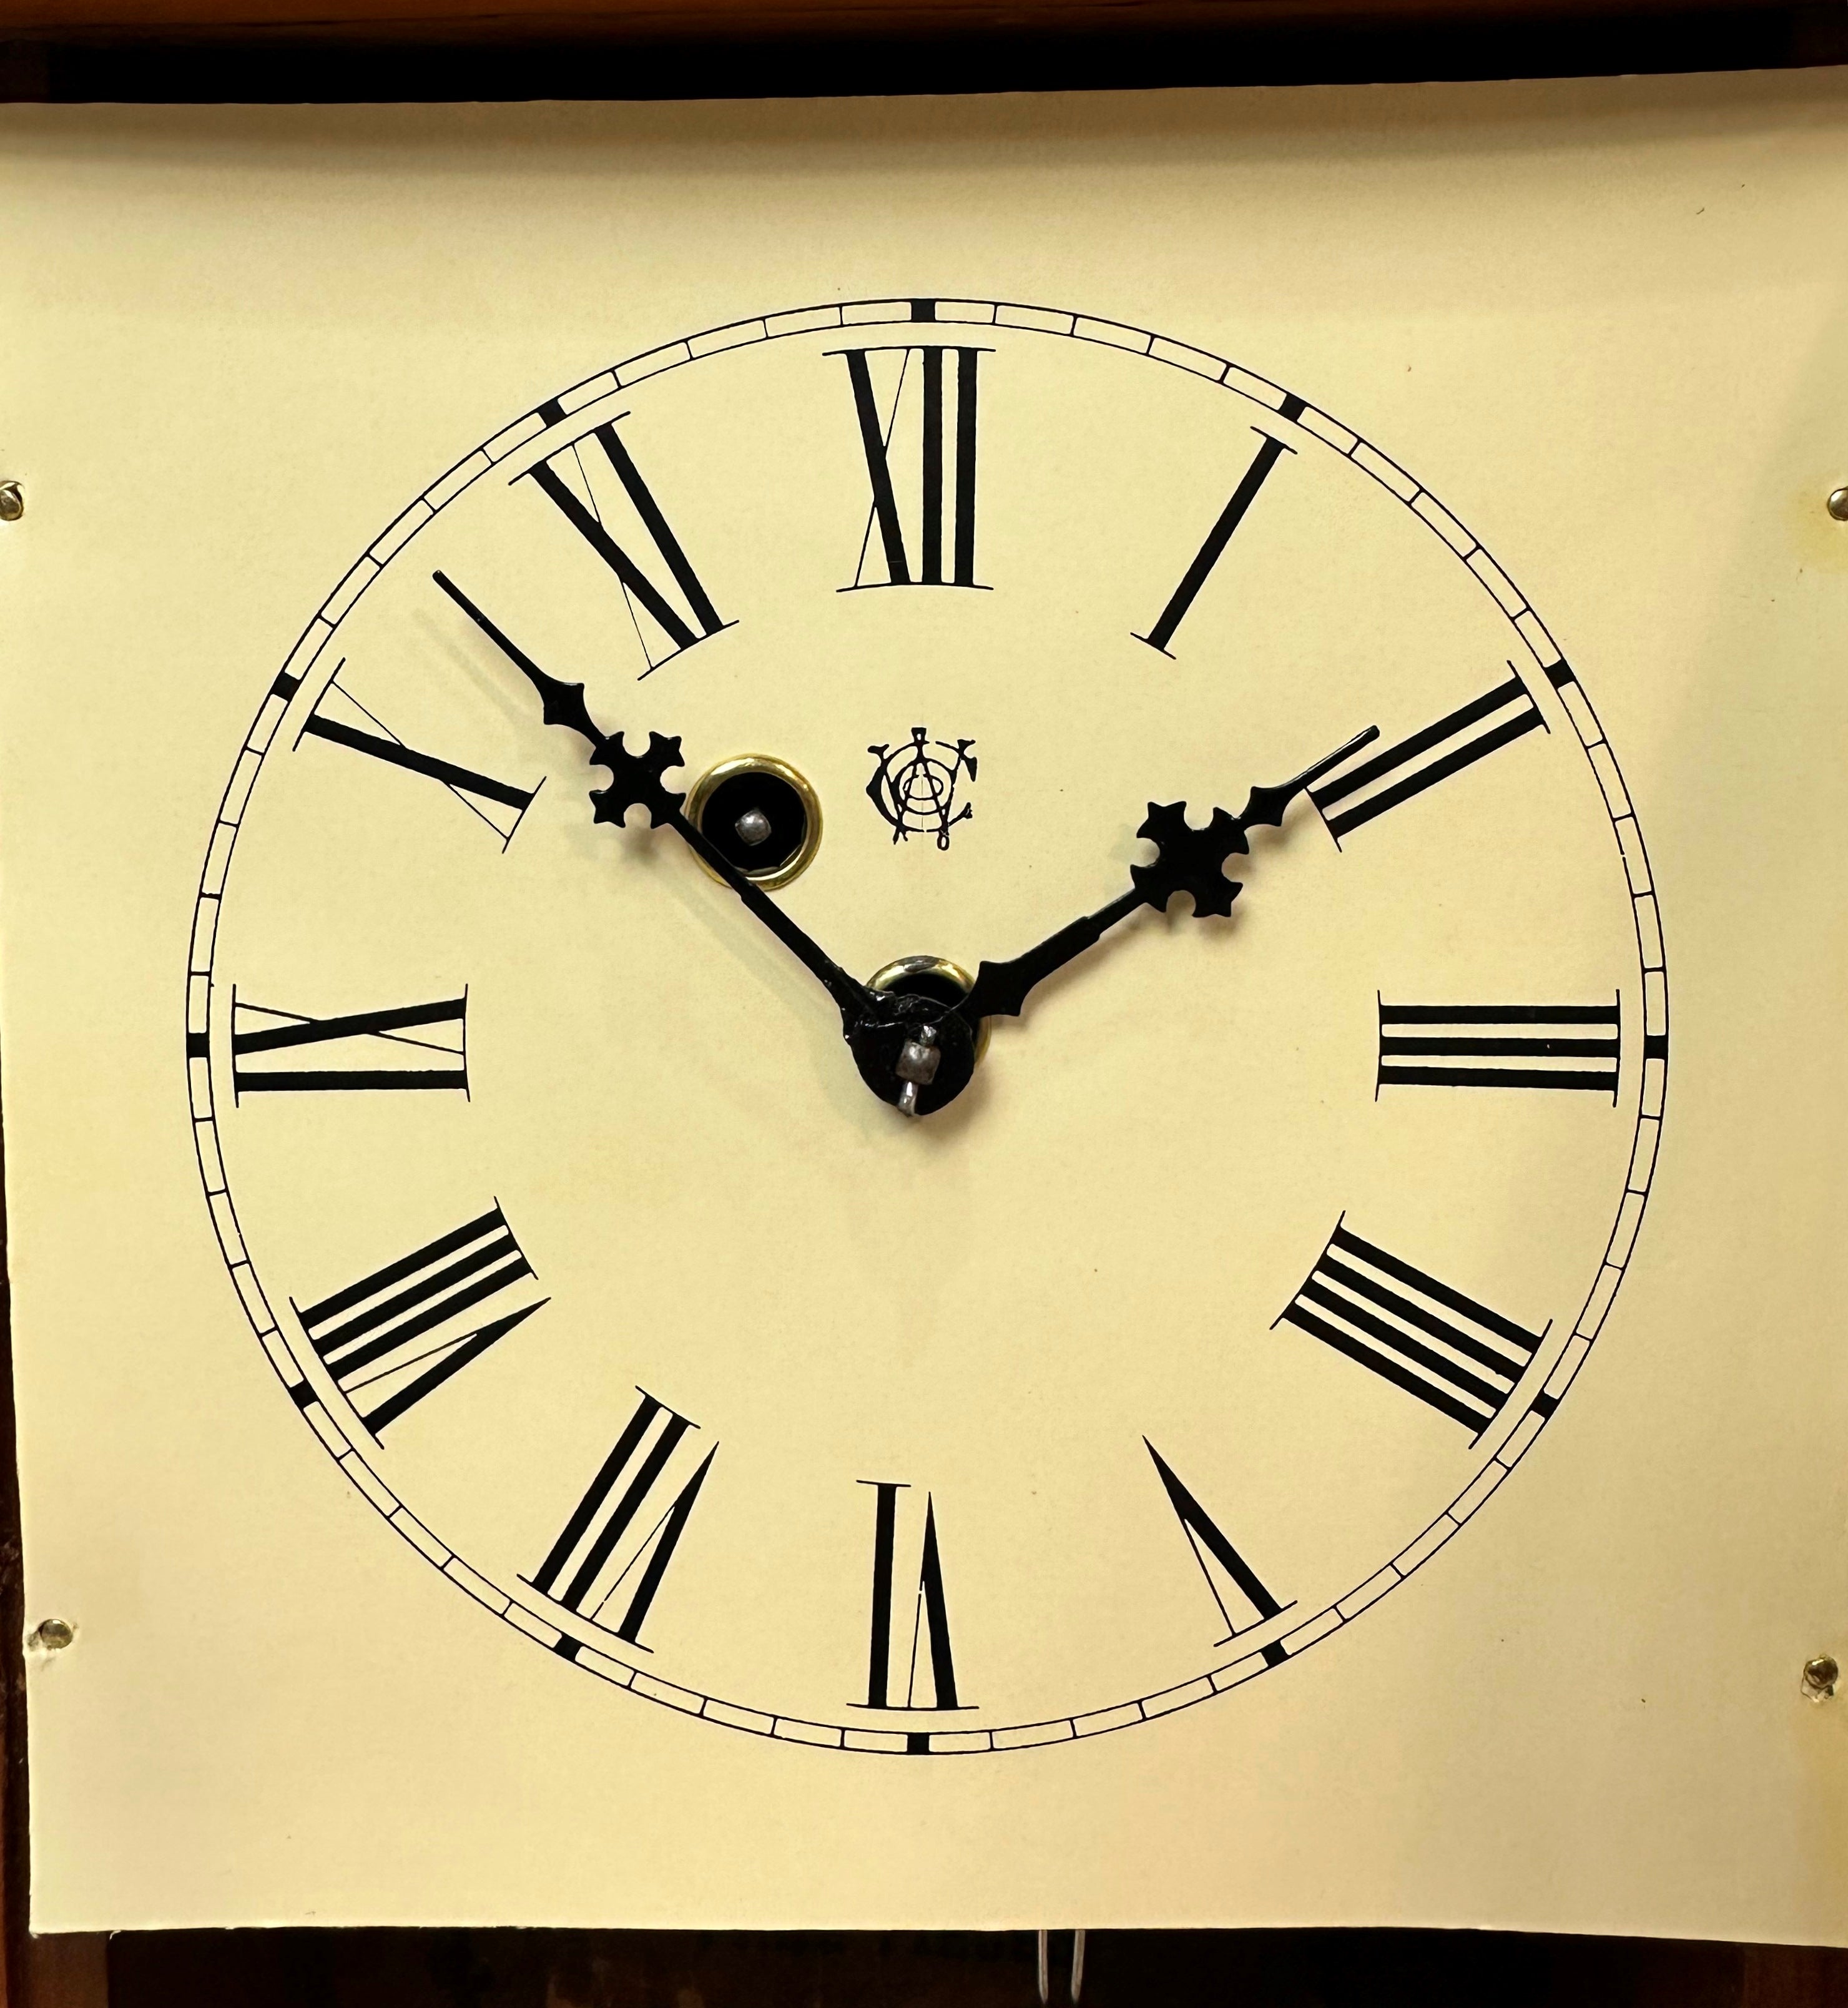 Antique Waterbury Pendulum Mantel Clock | eXibit collection